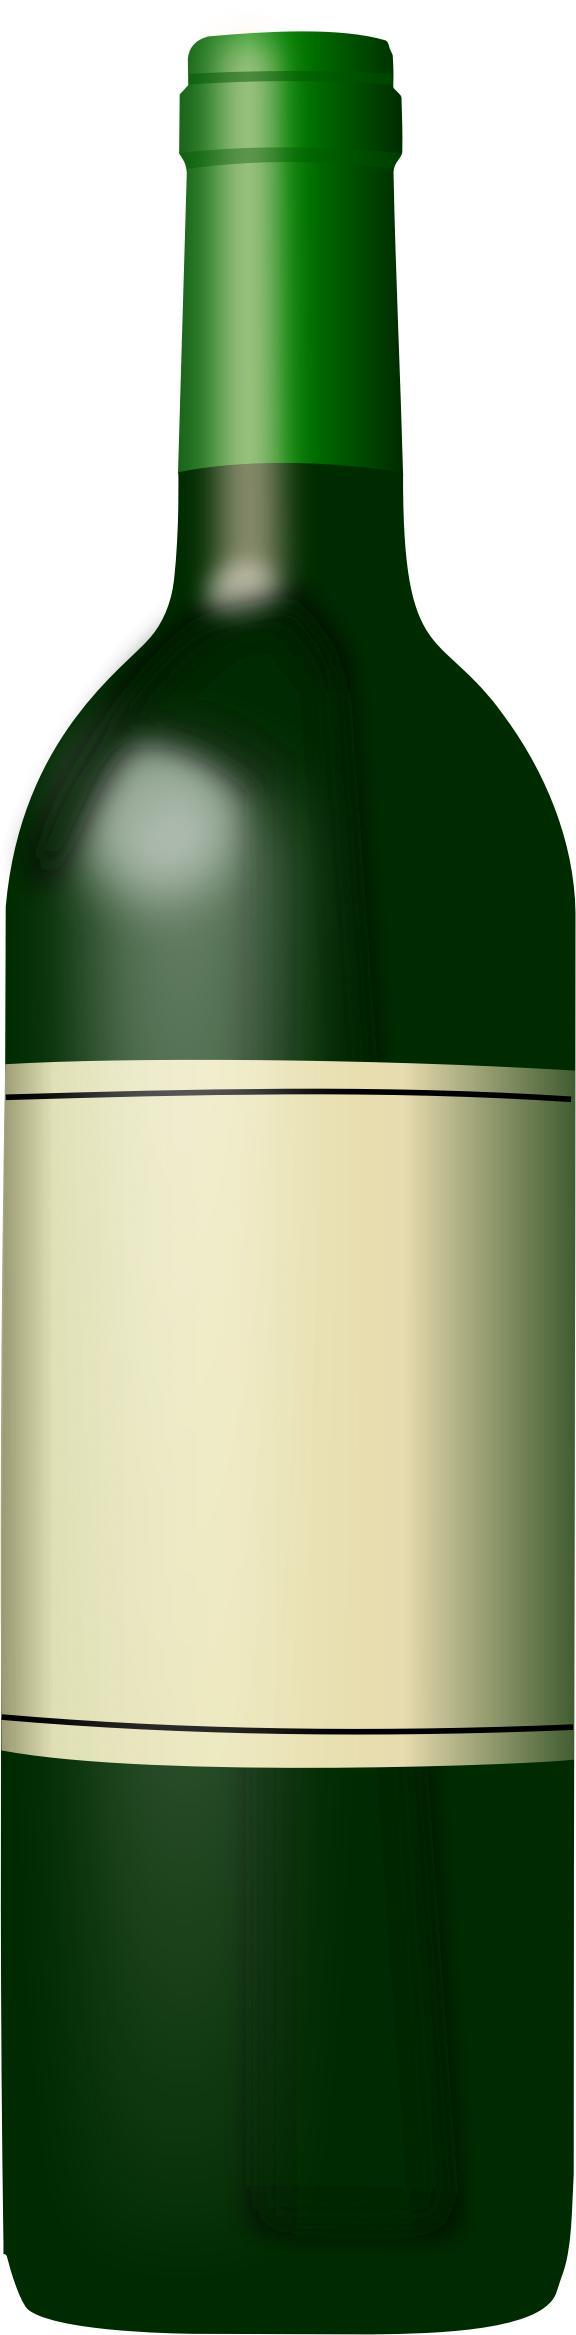 Wine bottle 2 (green) png transparent